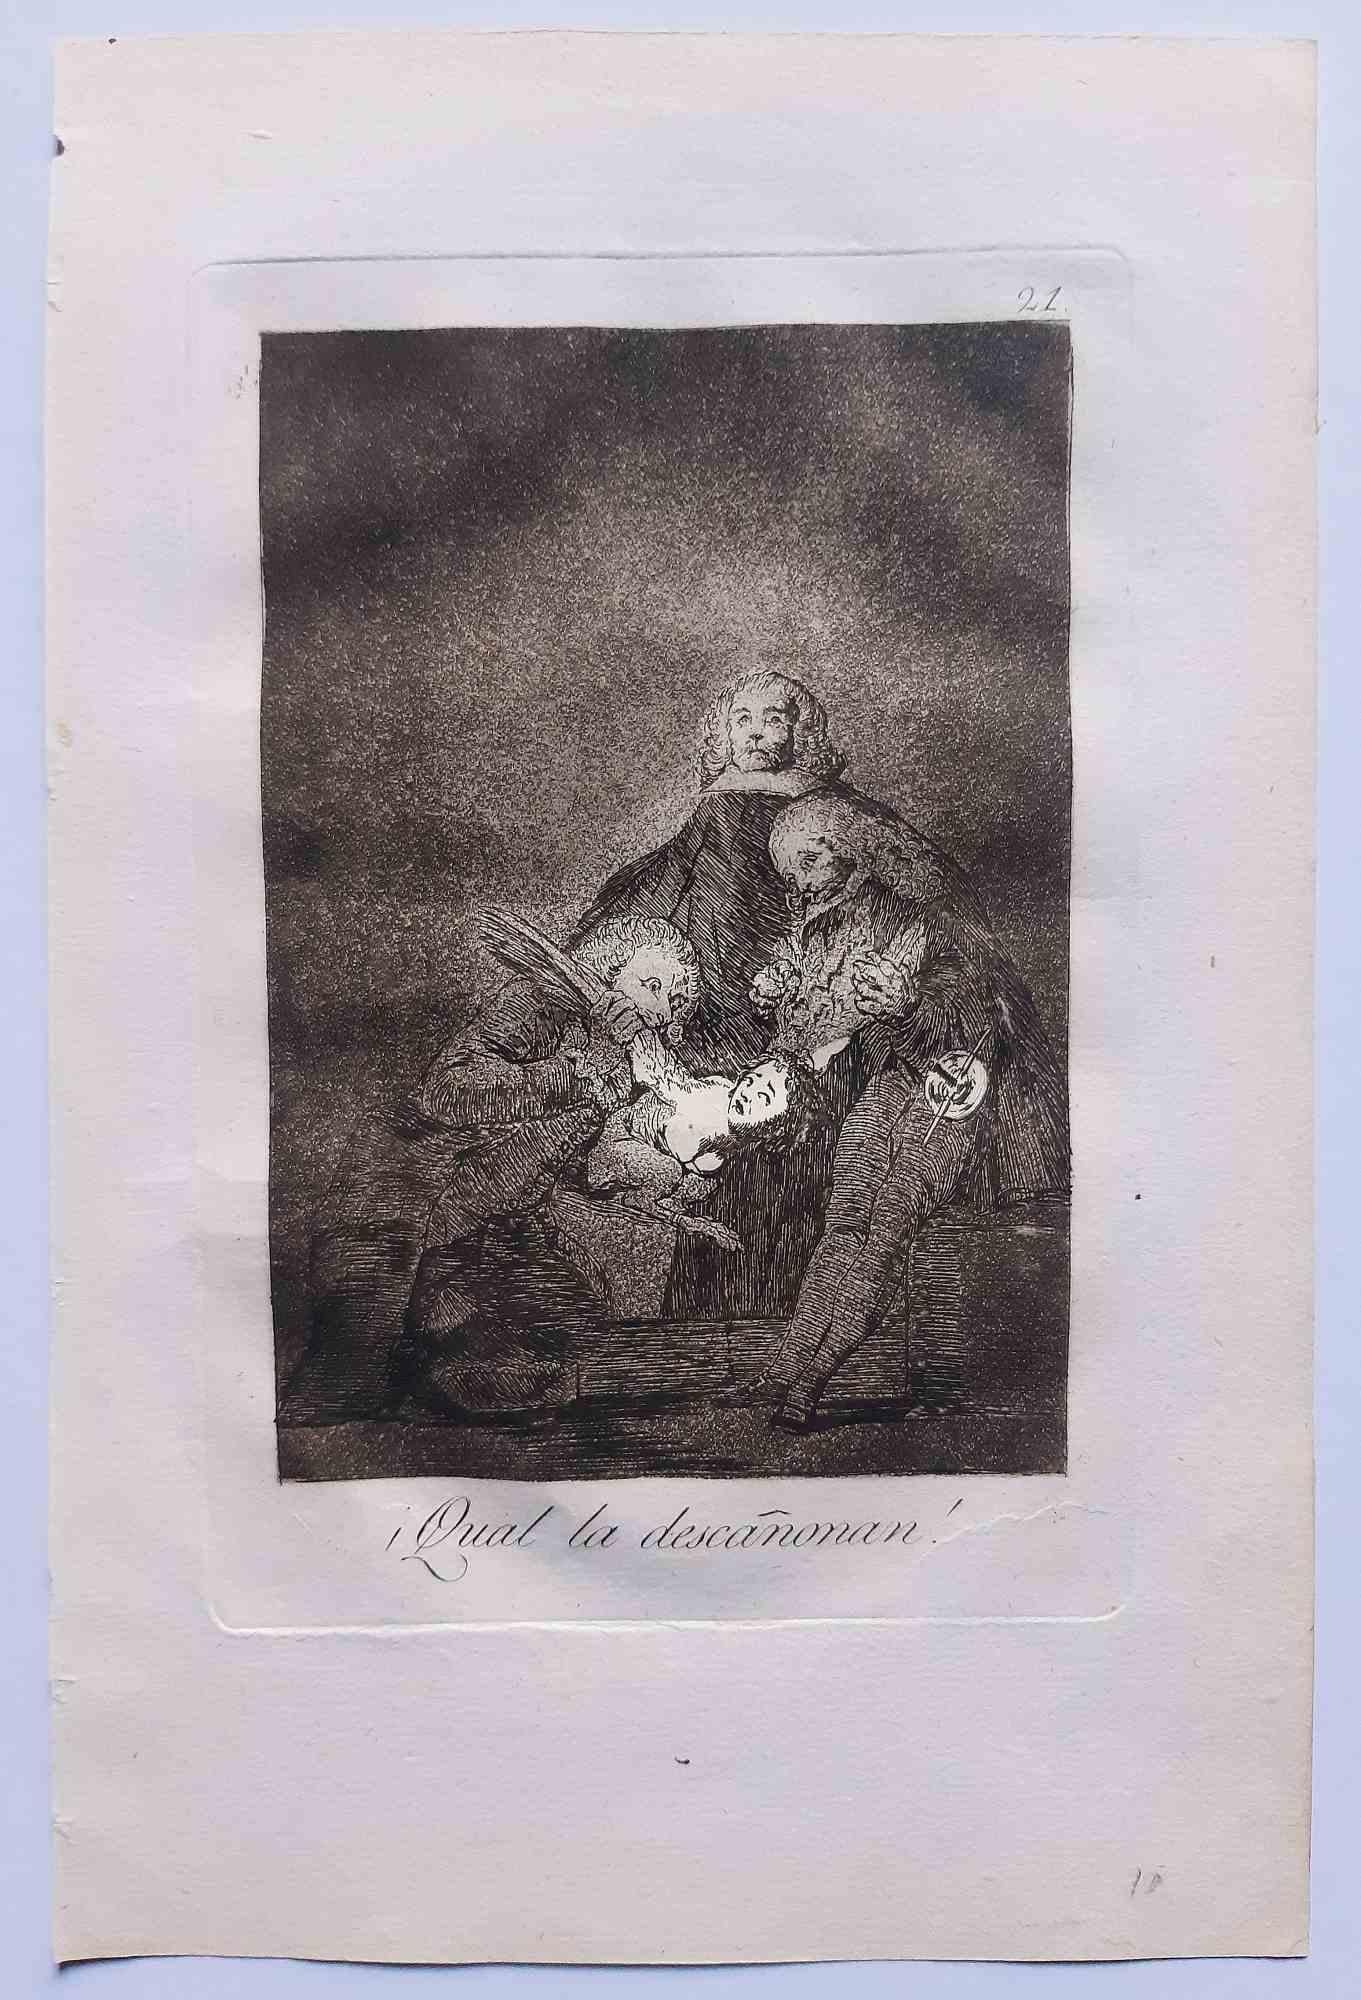 Francisco Goya Figurative Print - Qual la Descañona from Los Caprichos - Etching by F. Goya - 1799